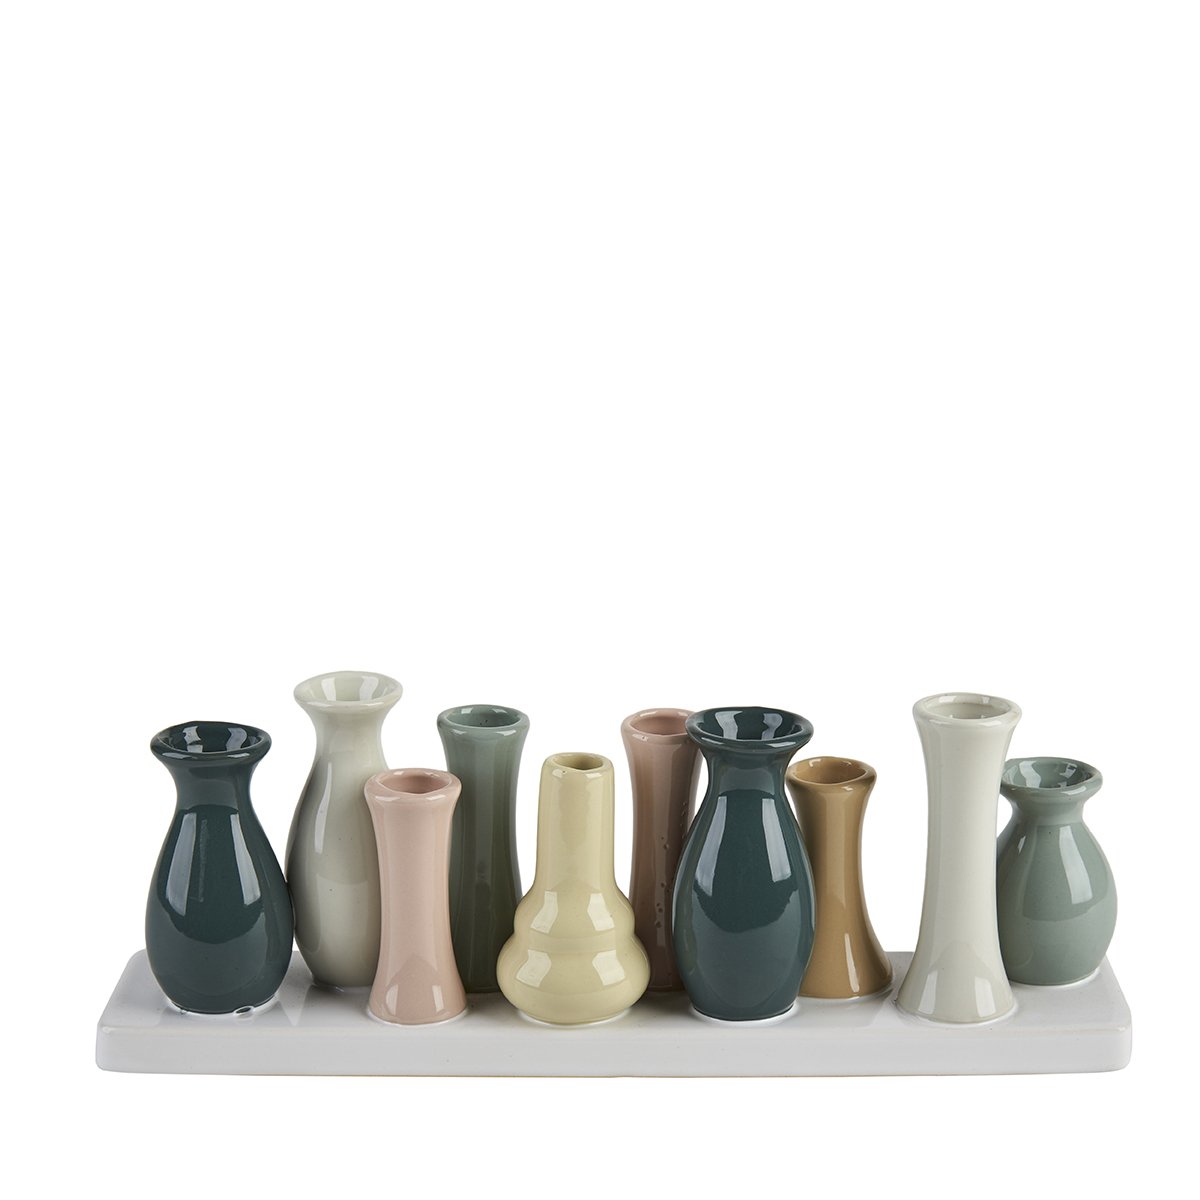 Vaser i flok – 10 vaser. Pastelfarvede
B: 30 cm H: 10 cm L: 6 cm